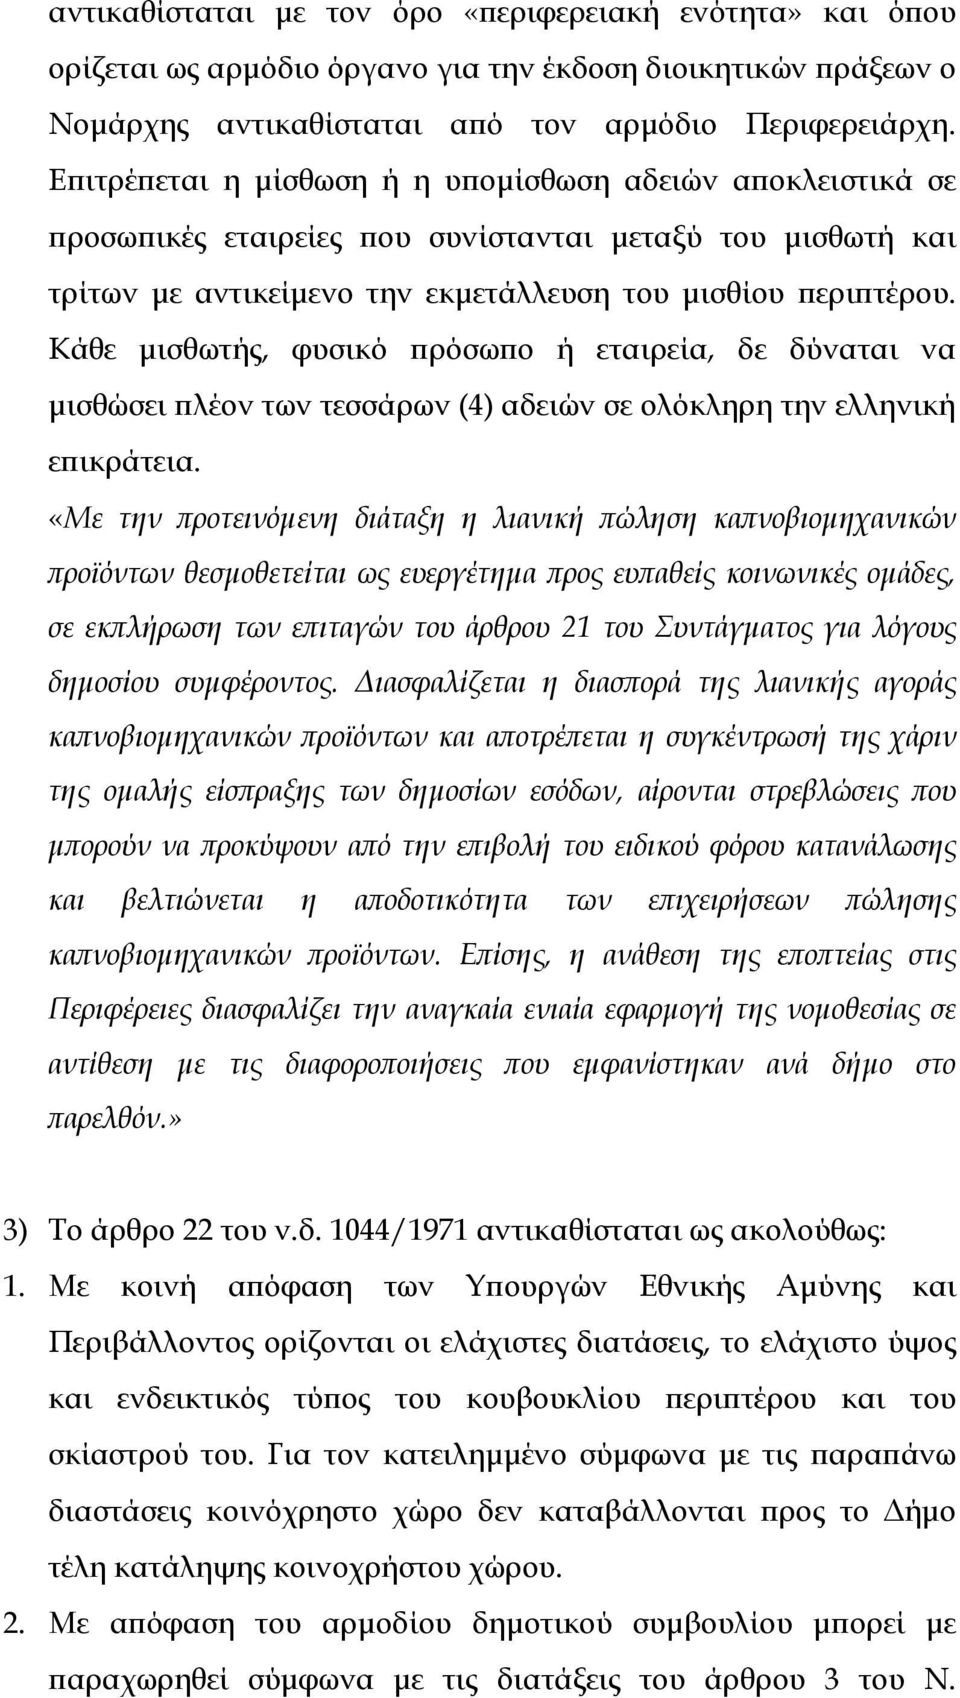 Κάθε µισθωτής, φυσικό ρόσω ο ή εταιρεία, δε δύναται να µισθώσει λέον των τεσσάρων (4) αδειών σε ολόκληρη την ελληνική ε ικράτεια.